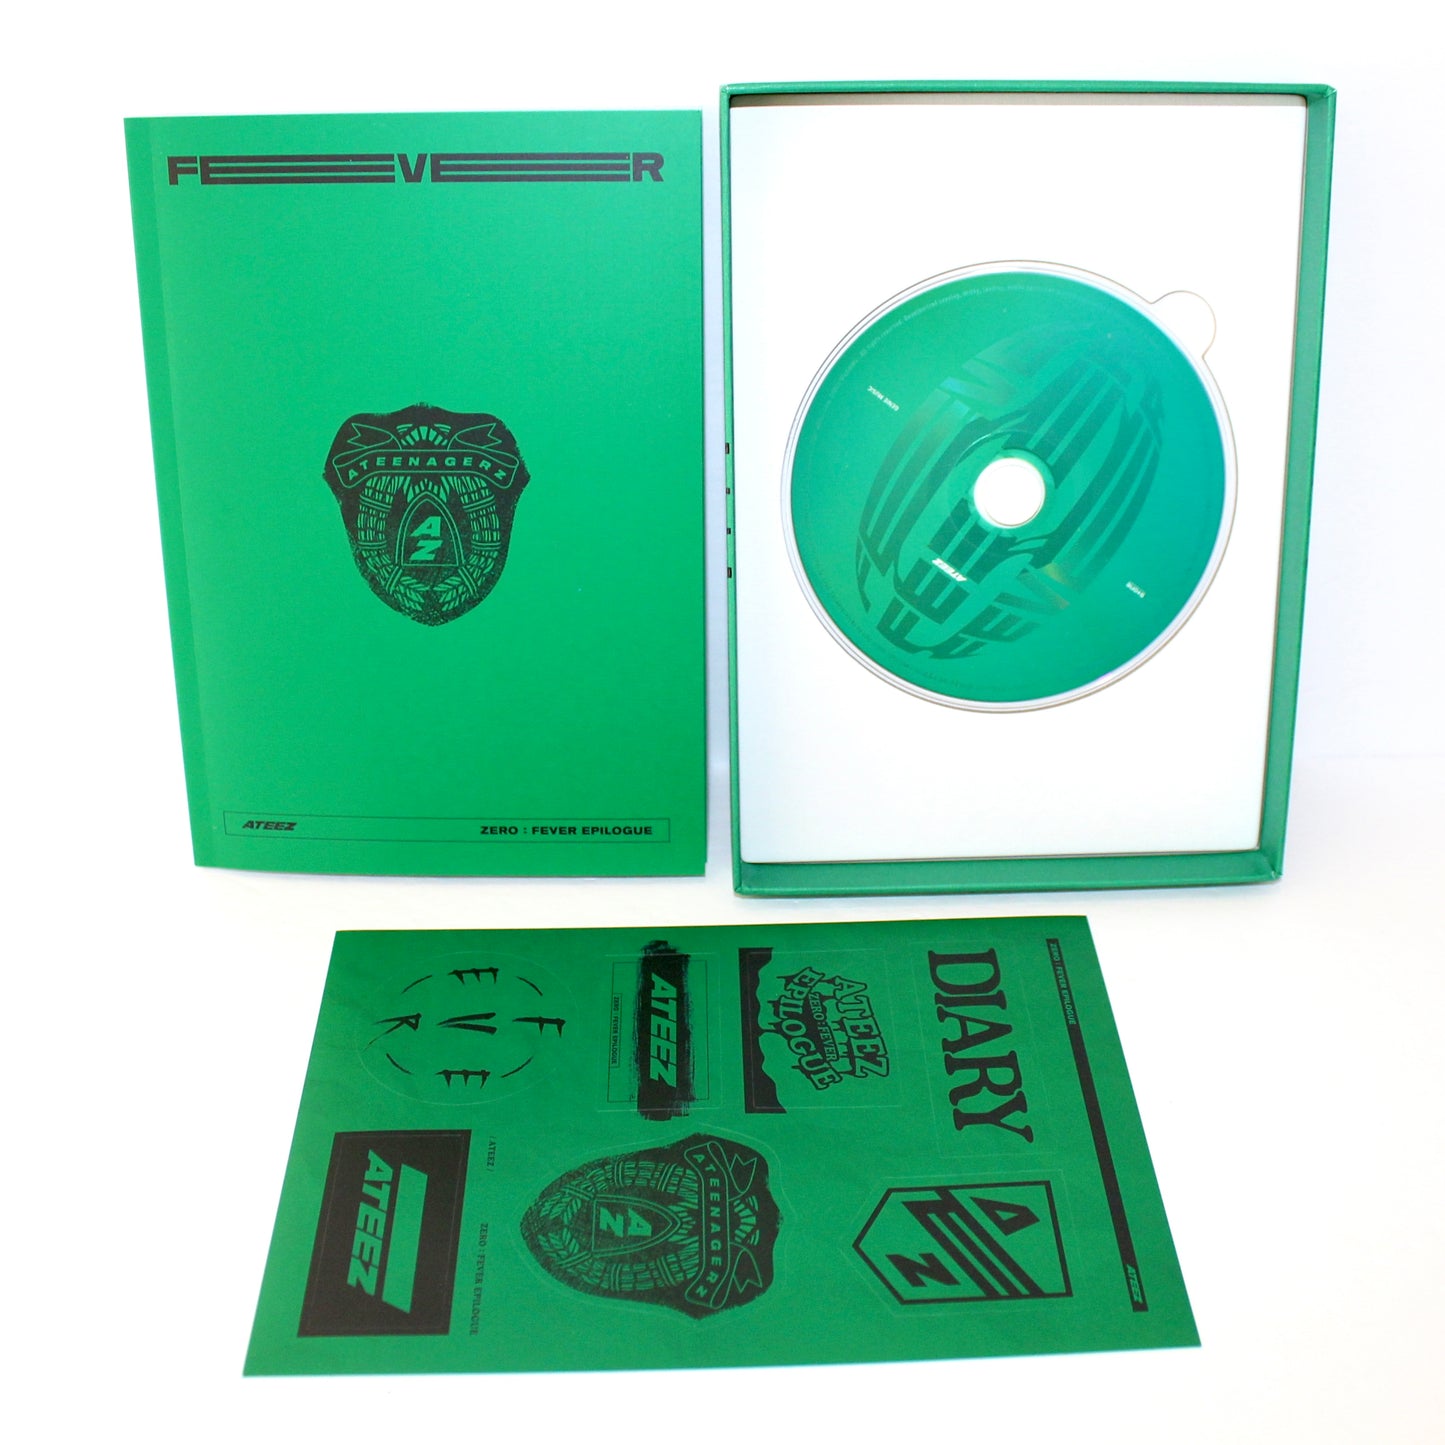 ATEEZ 8th Mini Album - ZERO: FEVER Epilogue | Diary ver.